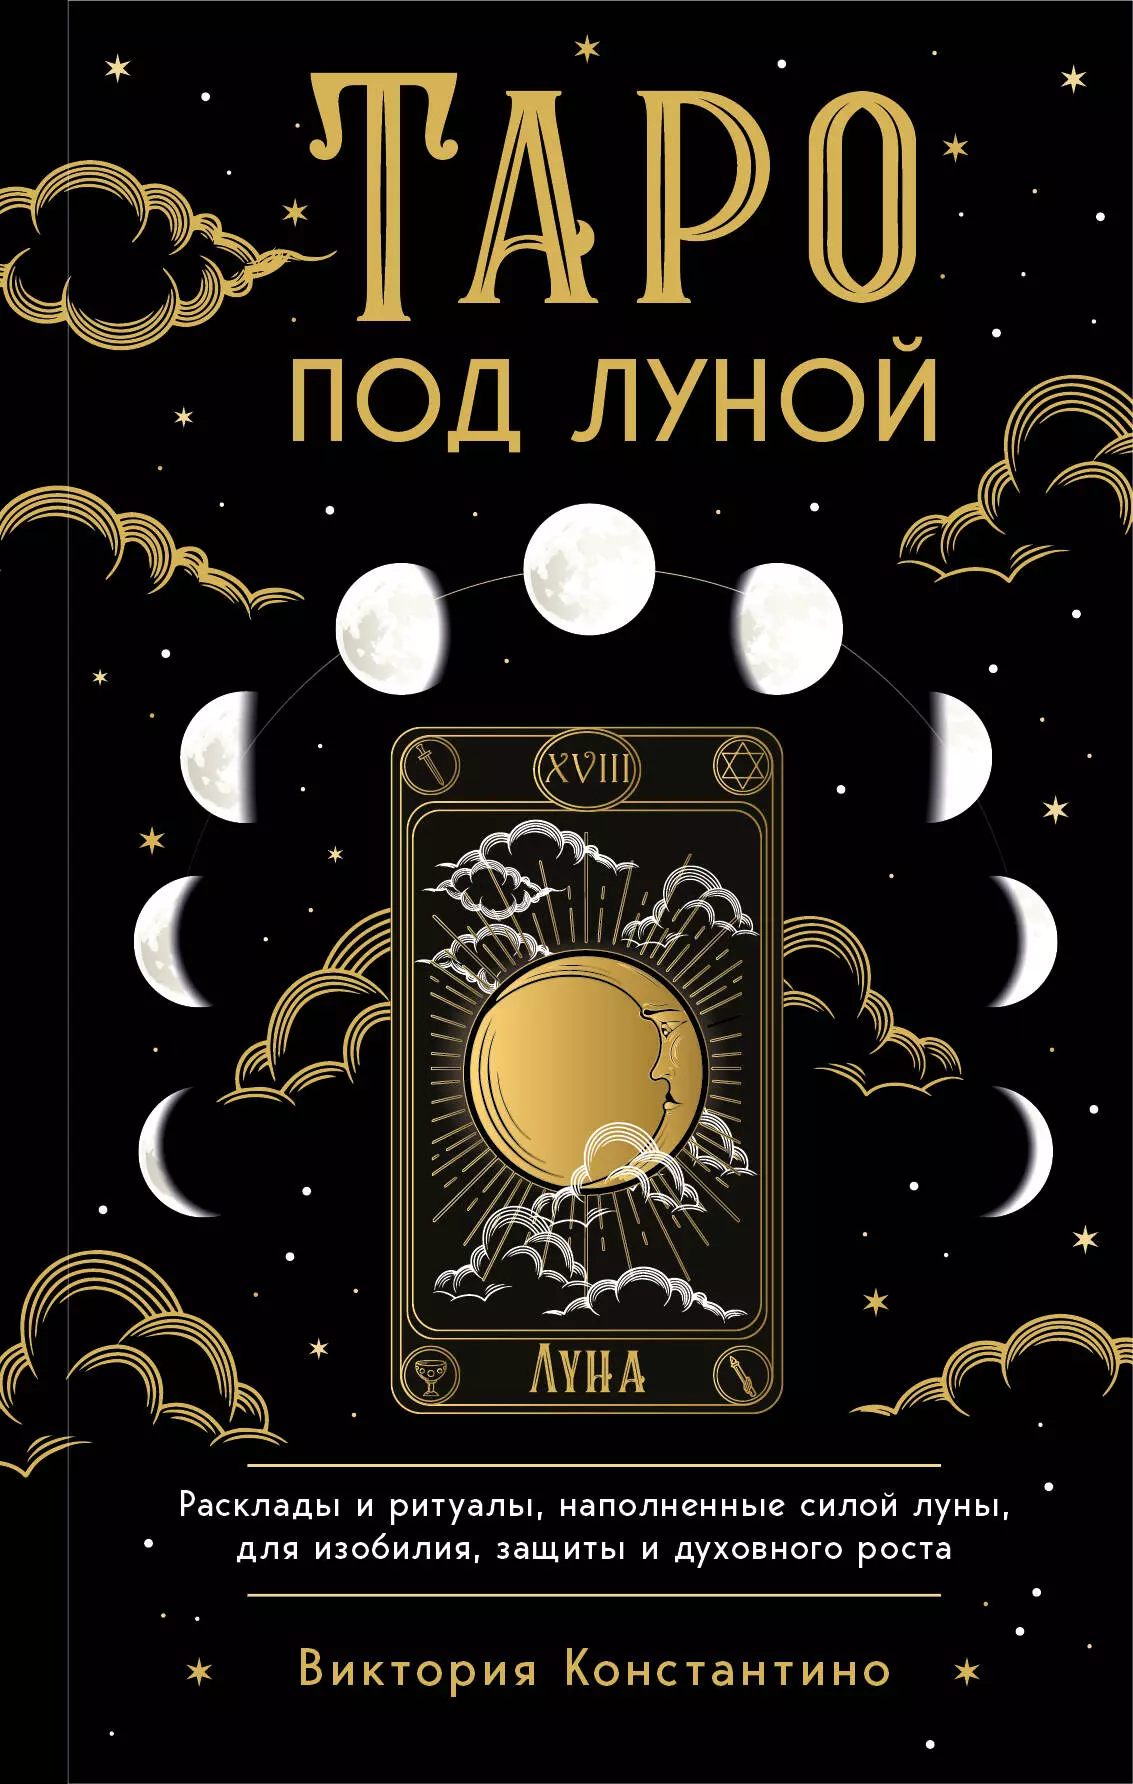 Константино Виктория Таро под луной: расклады, ритуалы, наполненные силой луны, для изобилия, защиты и духовного роста